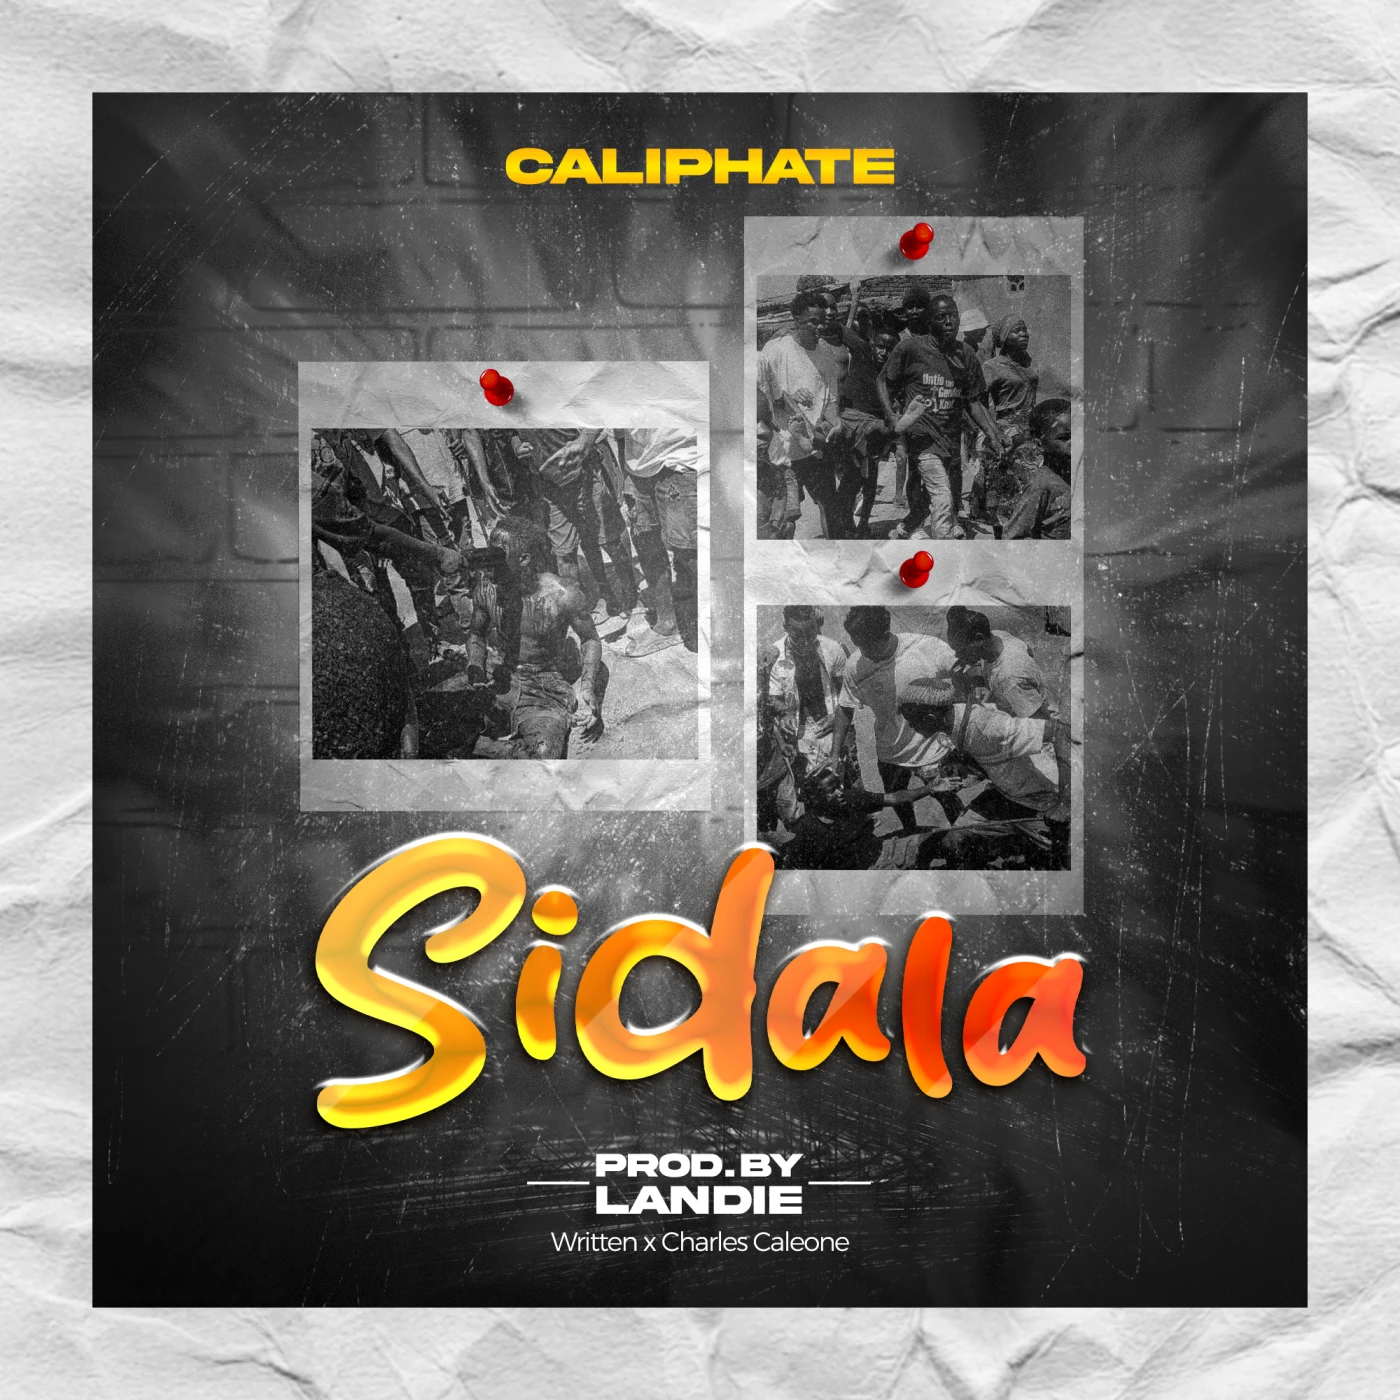 sidala-caliphate-Just Malawi Music